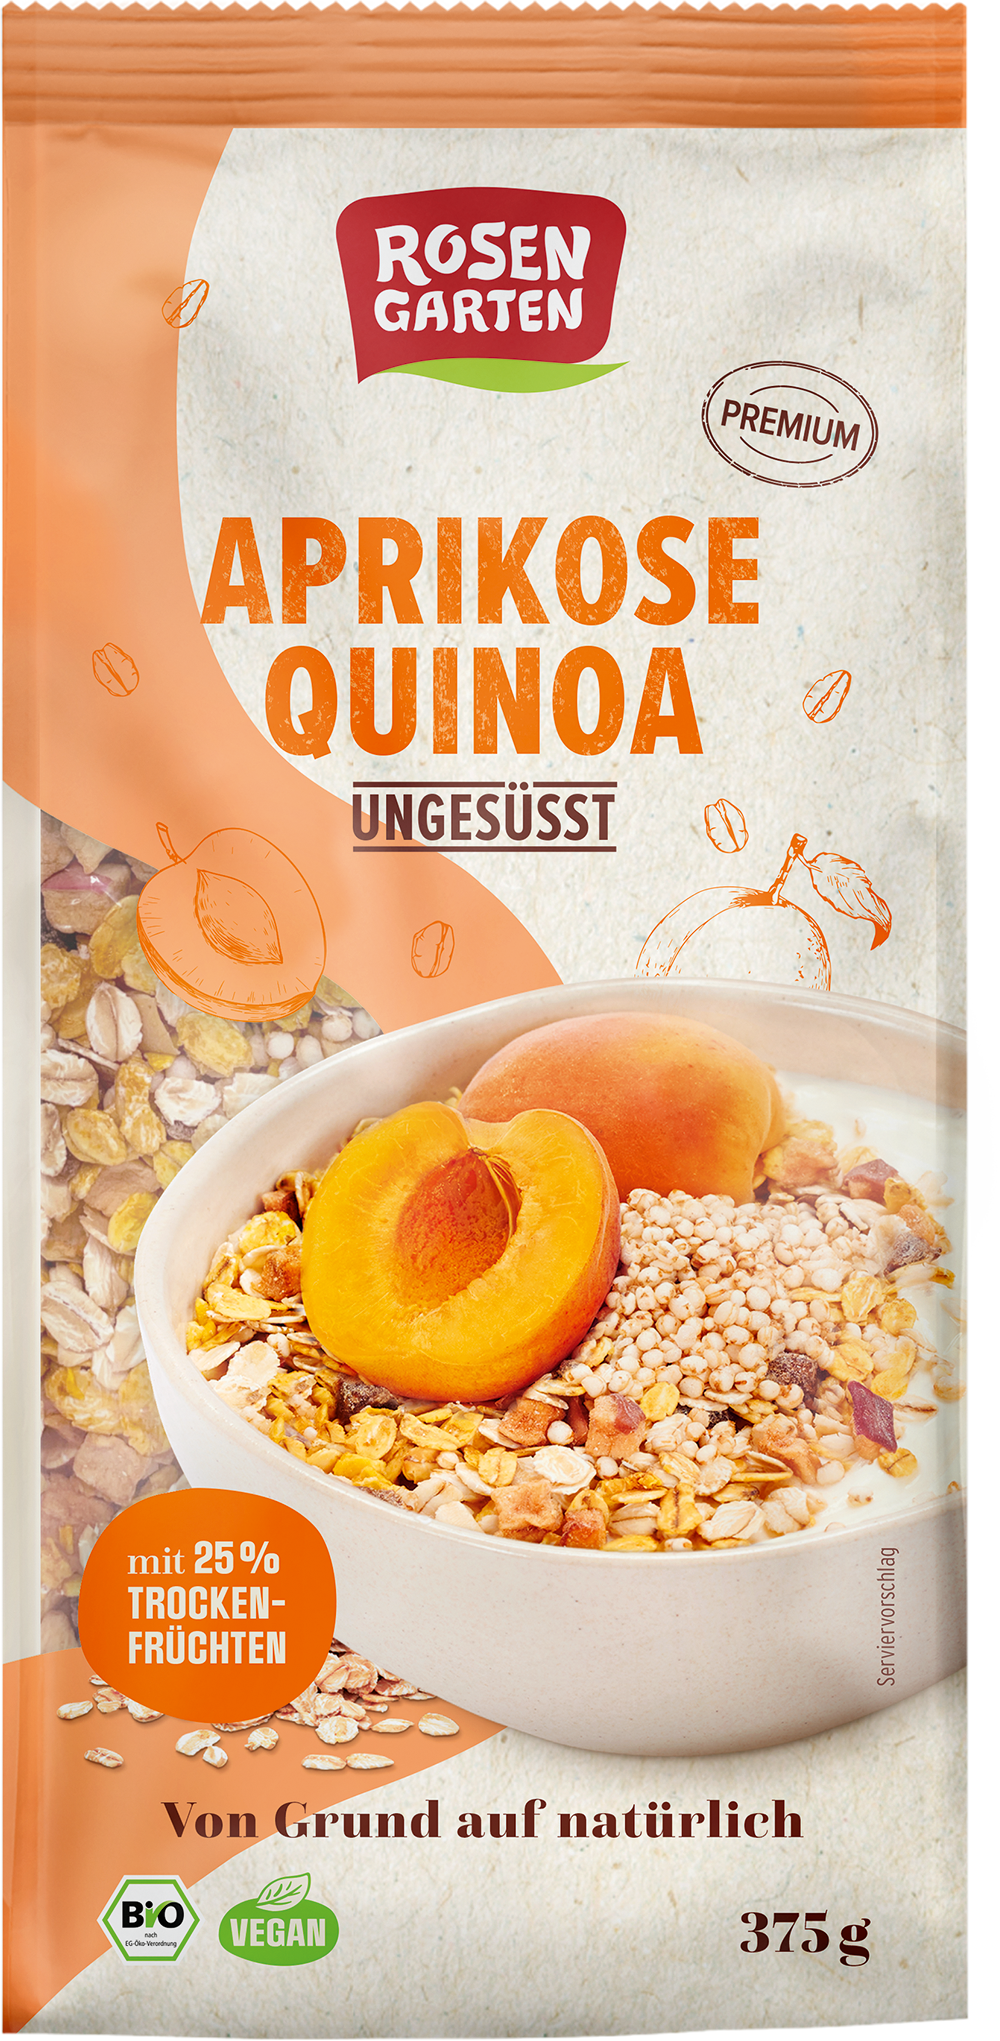 Rosengarten Aprikose-Quinoa-Müsli ungesüßt 375g/A